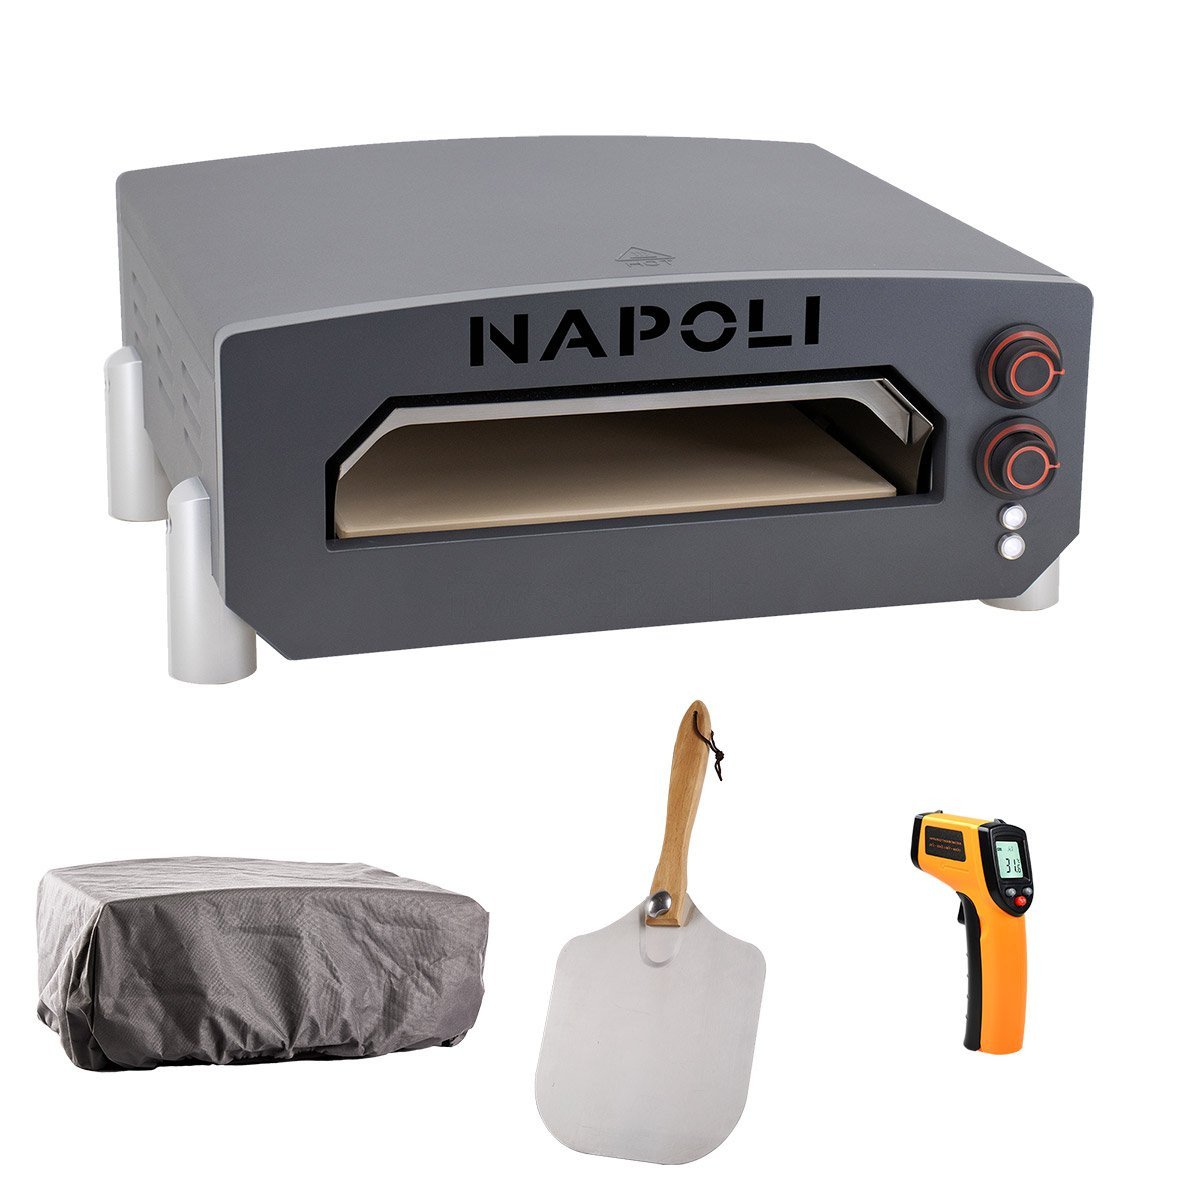 NAPOLI 13” elektrisk pizzaovn, cover, spade og termometer